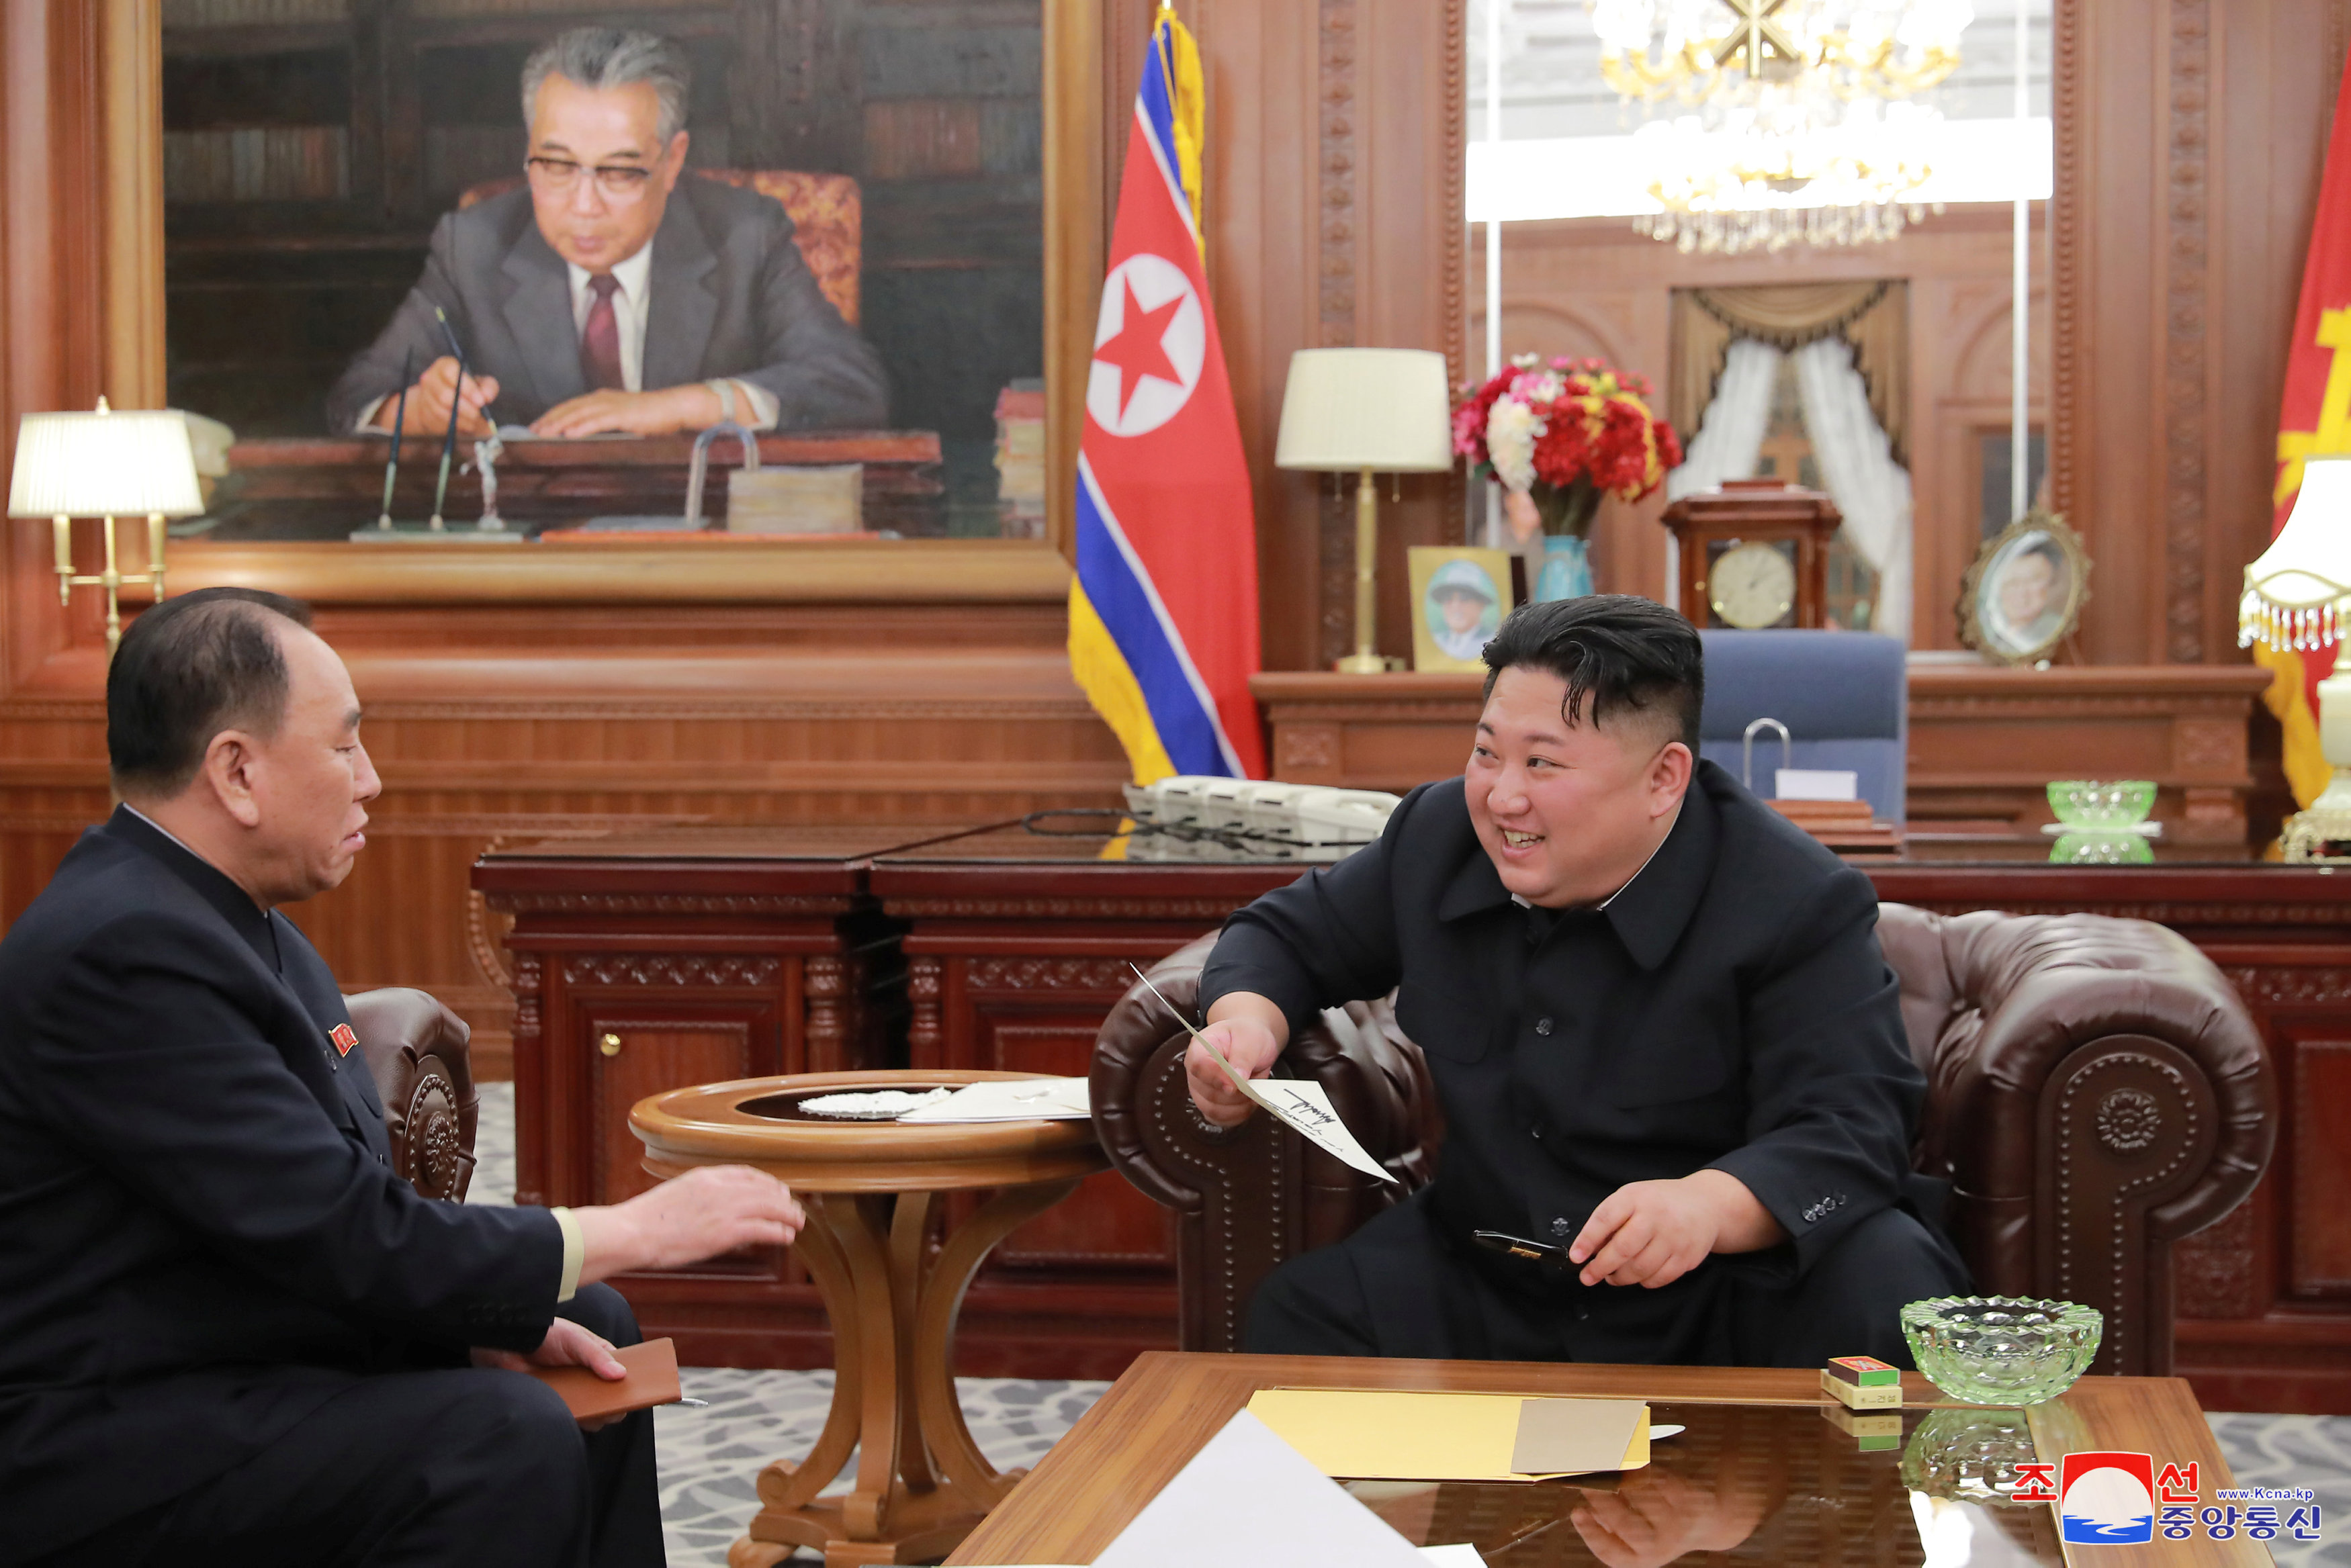 زعيم كوريا الشمالية يلتقى وفد بلاده الذى زار أمريكا (2)